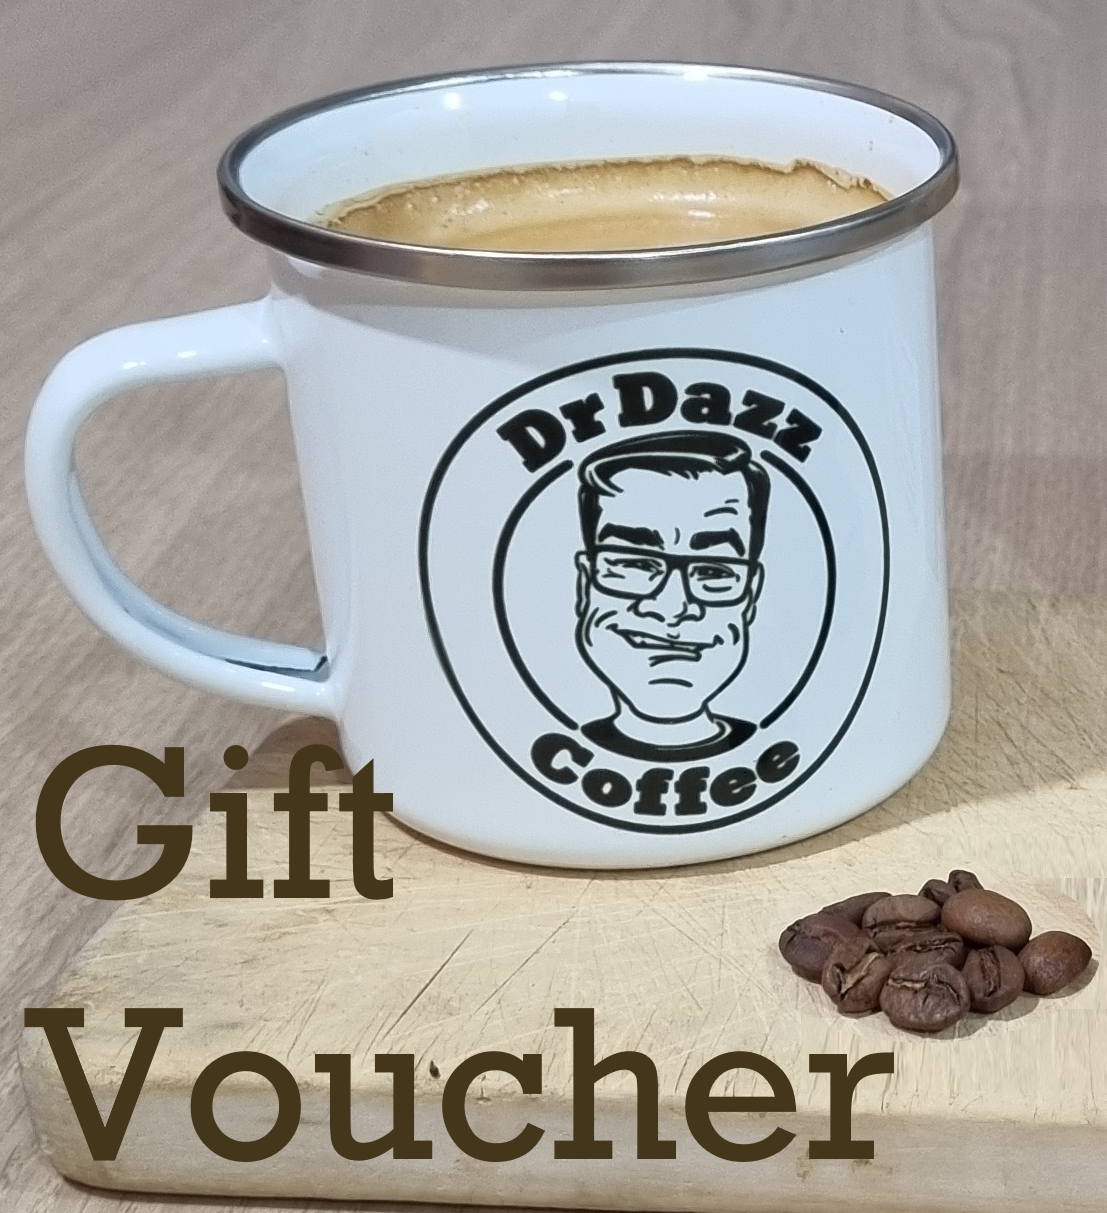 DrDazz Coffee Gift Voucher